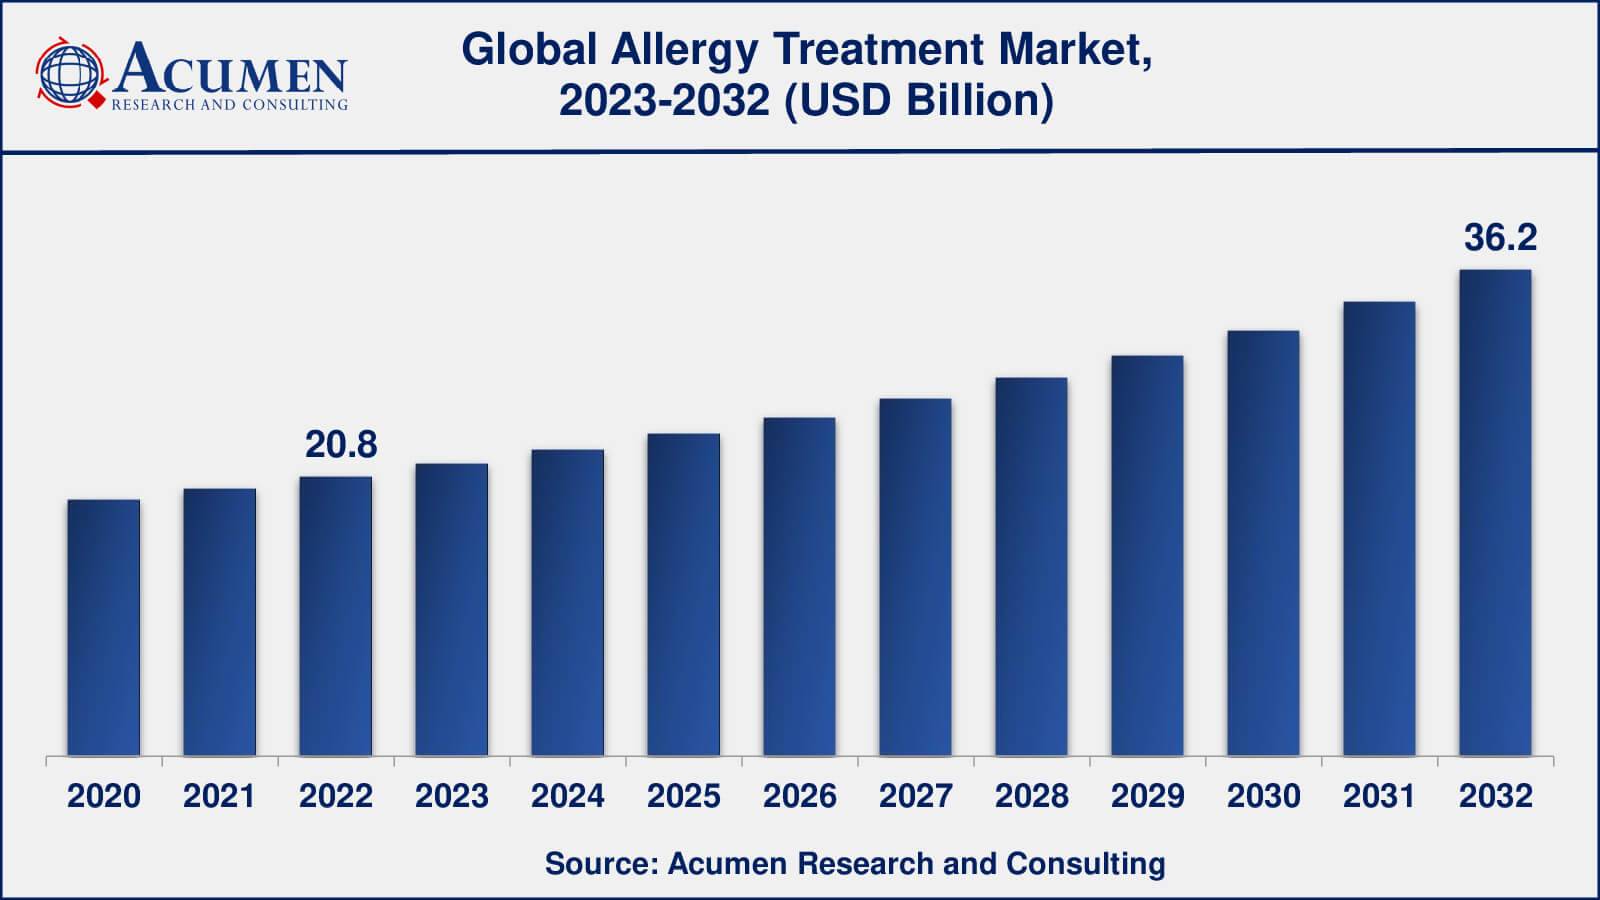 Global Allergy Treatment Market Dynamics